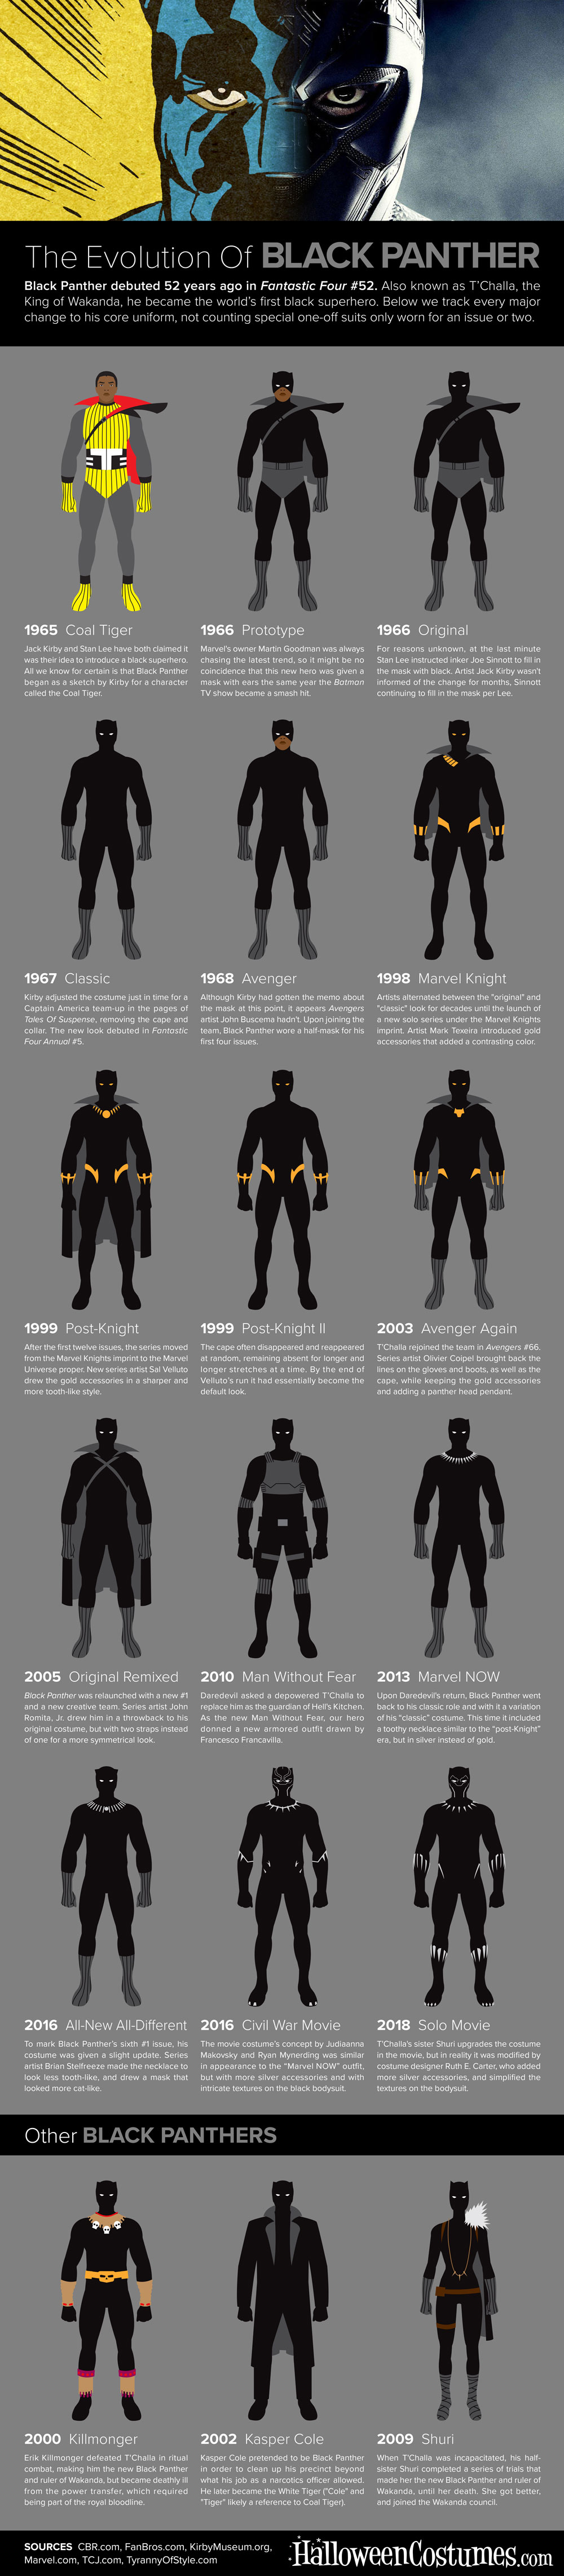 Evolution-of-Black-Panther.jpg